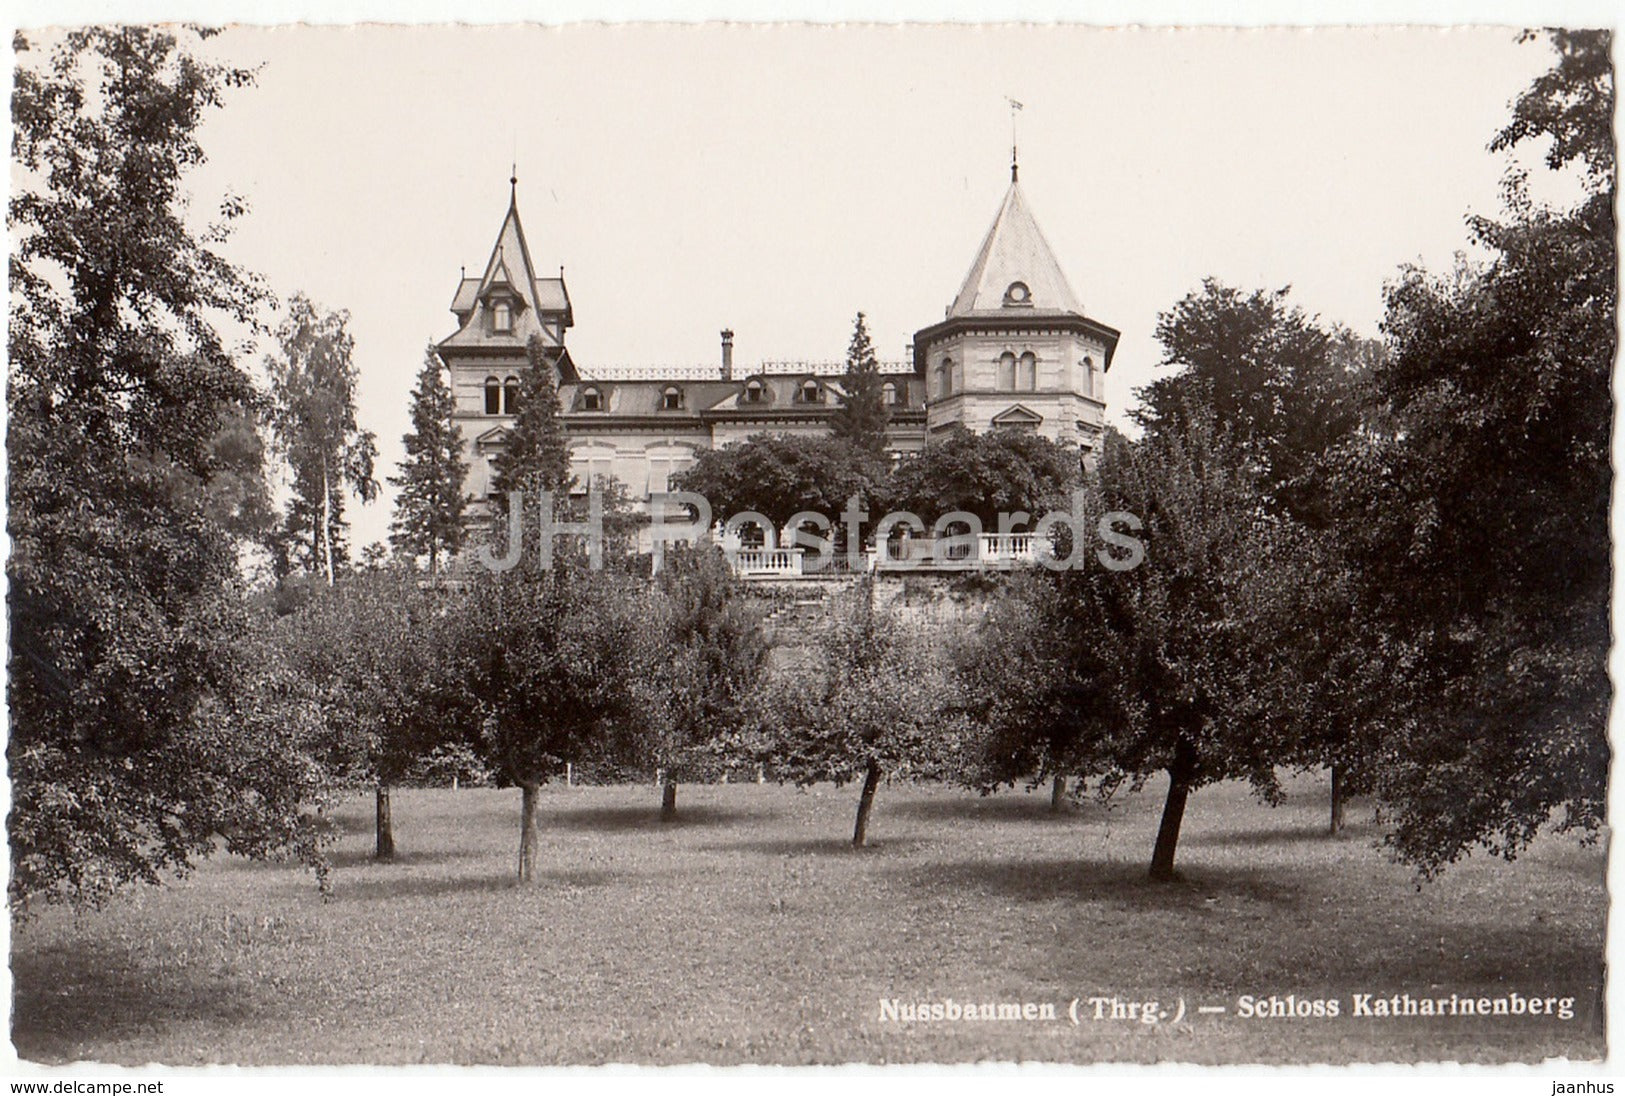 Nussbaumen - Schloss Katharinenberg - castle - 7515 - Switzerland - ol – JH  Postcards